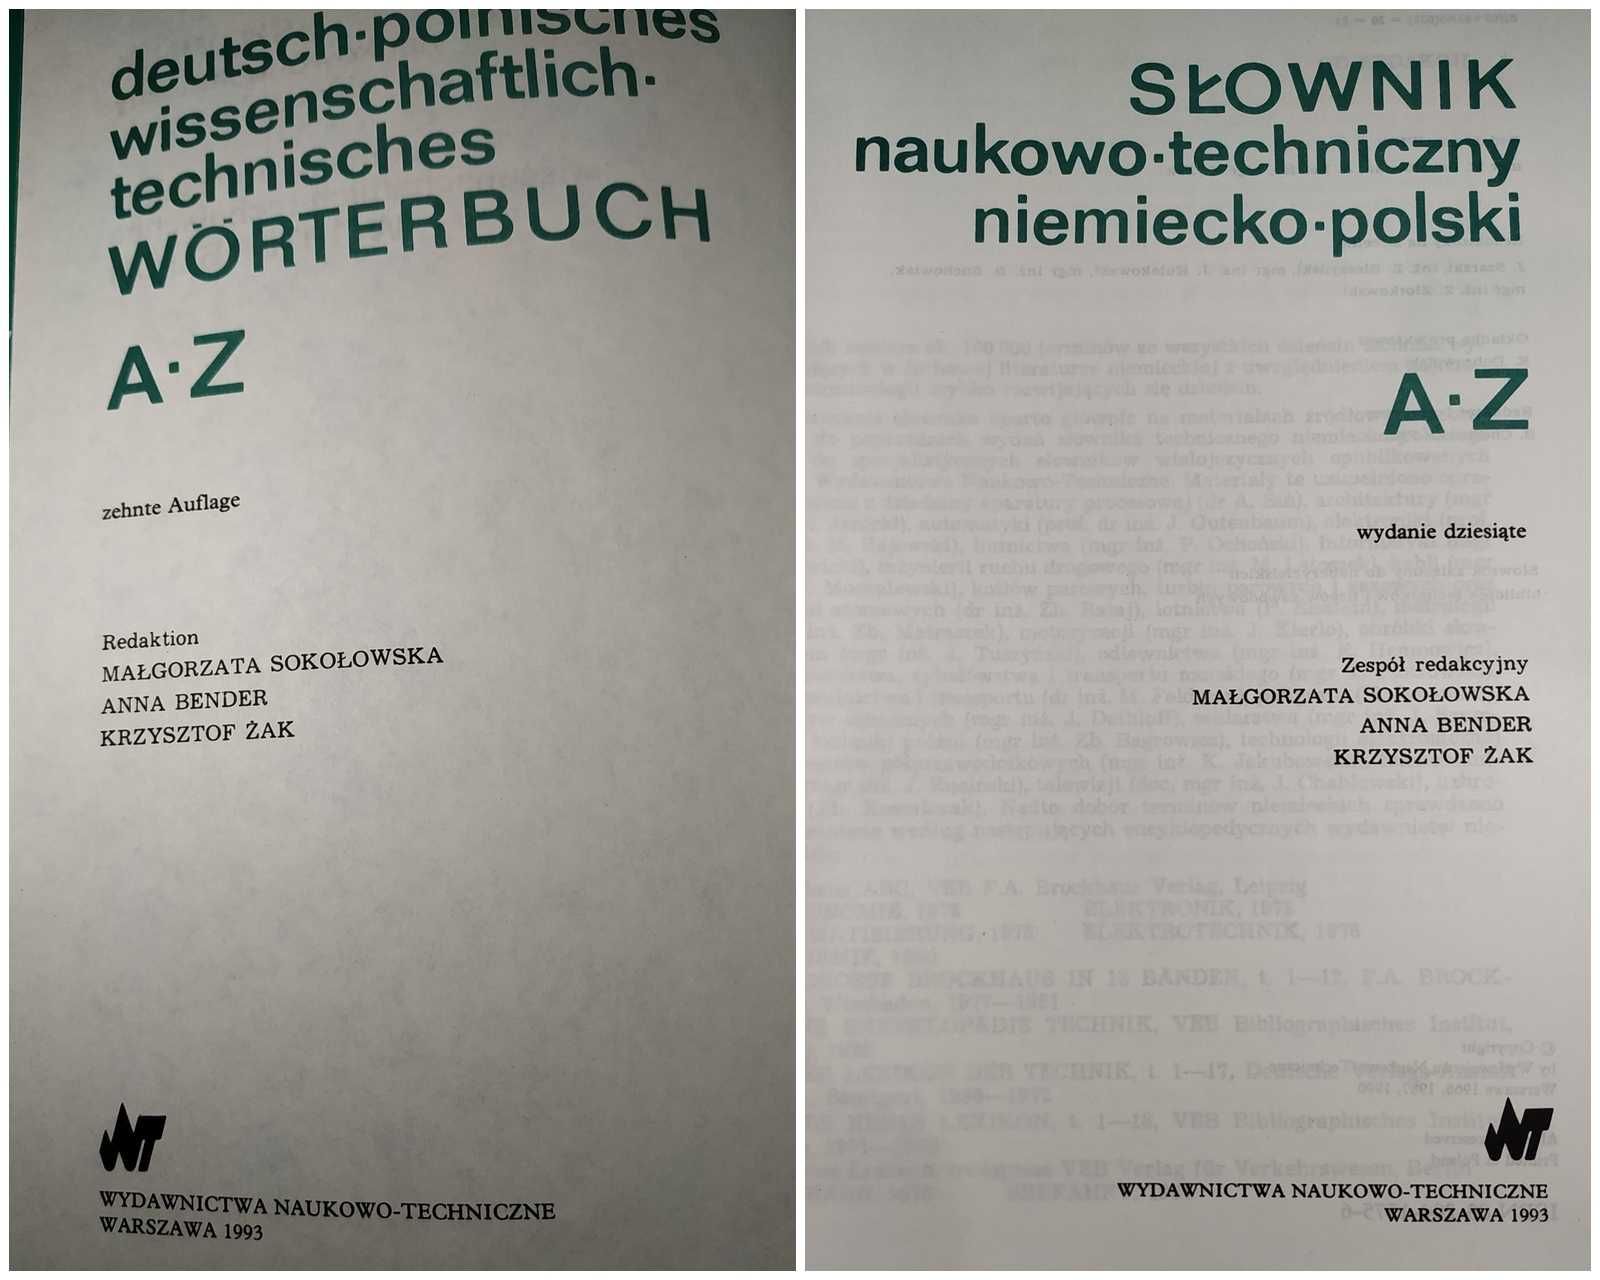 Słownik naukowo-techniczny - polsko-niemiecki